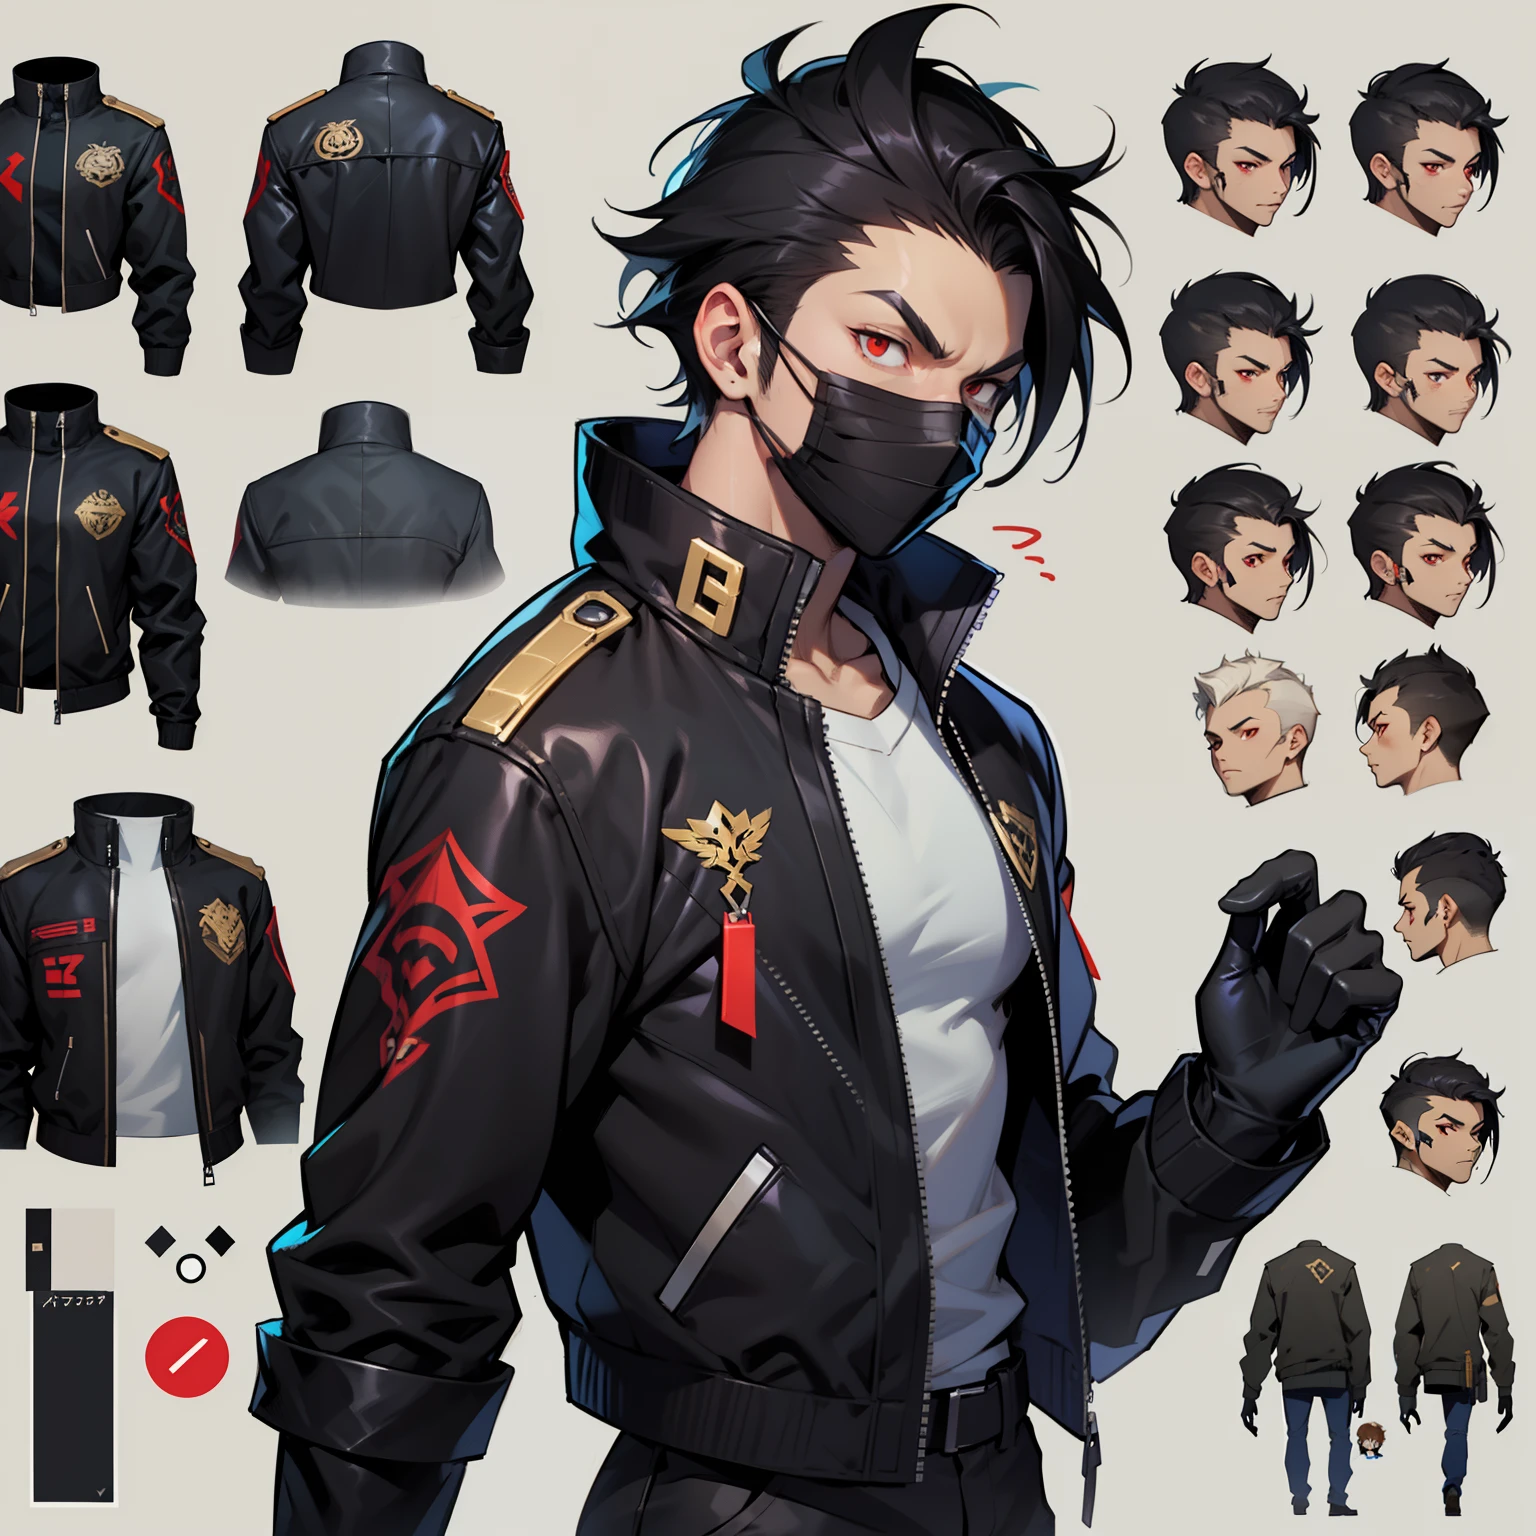 흰 셔츠에 검은 재킷을 입은 남자, 검은 천마스크 , pushed 뒤쪽에 black hair , ((캐릭터 컨셉 아트)), ((캐릭터 디자인 시트, 같은 캐릭터, 앞쪽, 옆, 뒤쪽에)) 메이플스토리 캐릭터 아트, 비디오 게임 캐릭터 디자인, 비디오 게임 캐릭터 디자인, 전문가의 높은 디테일 컨셉 아트, 금속 총알 컨셉 아트, 재미있는 캐릭터 디자인, 검은색 바지 ,그의 입에 검은 마스크 , 흰색 셔츠 위에 검은색 재킷 , 푸시백 이발 , 검은 장갑 , 빨간 눈 , 애니메이션 남성 스타일 , 그의 입에 검은 마스크 , 흰색 티셔츠 위에 검은색 재킷  , 푸시백 이발, 빨간 눈 , 검은 장갑